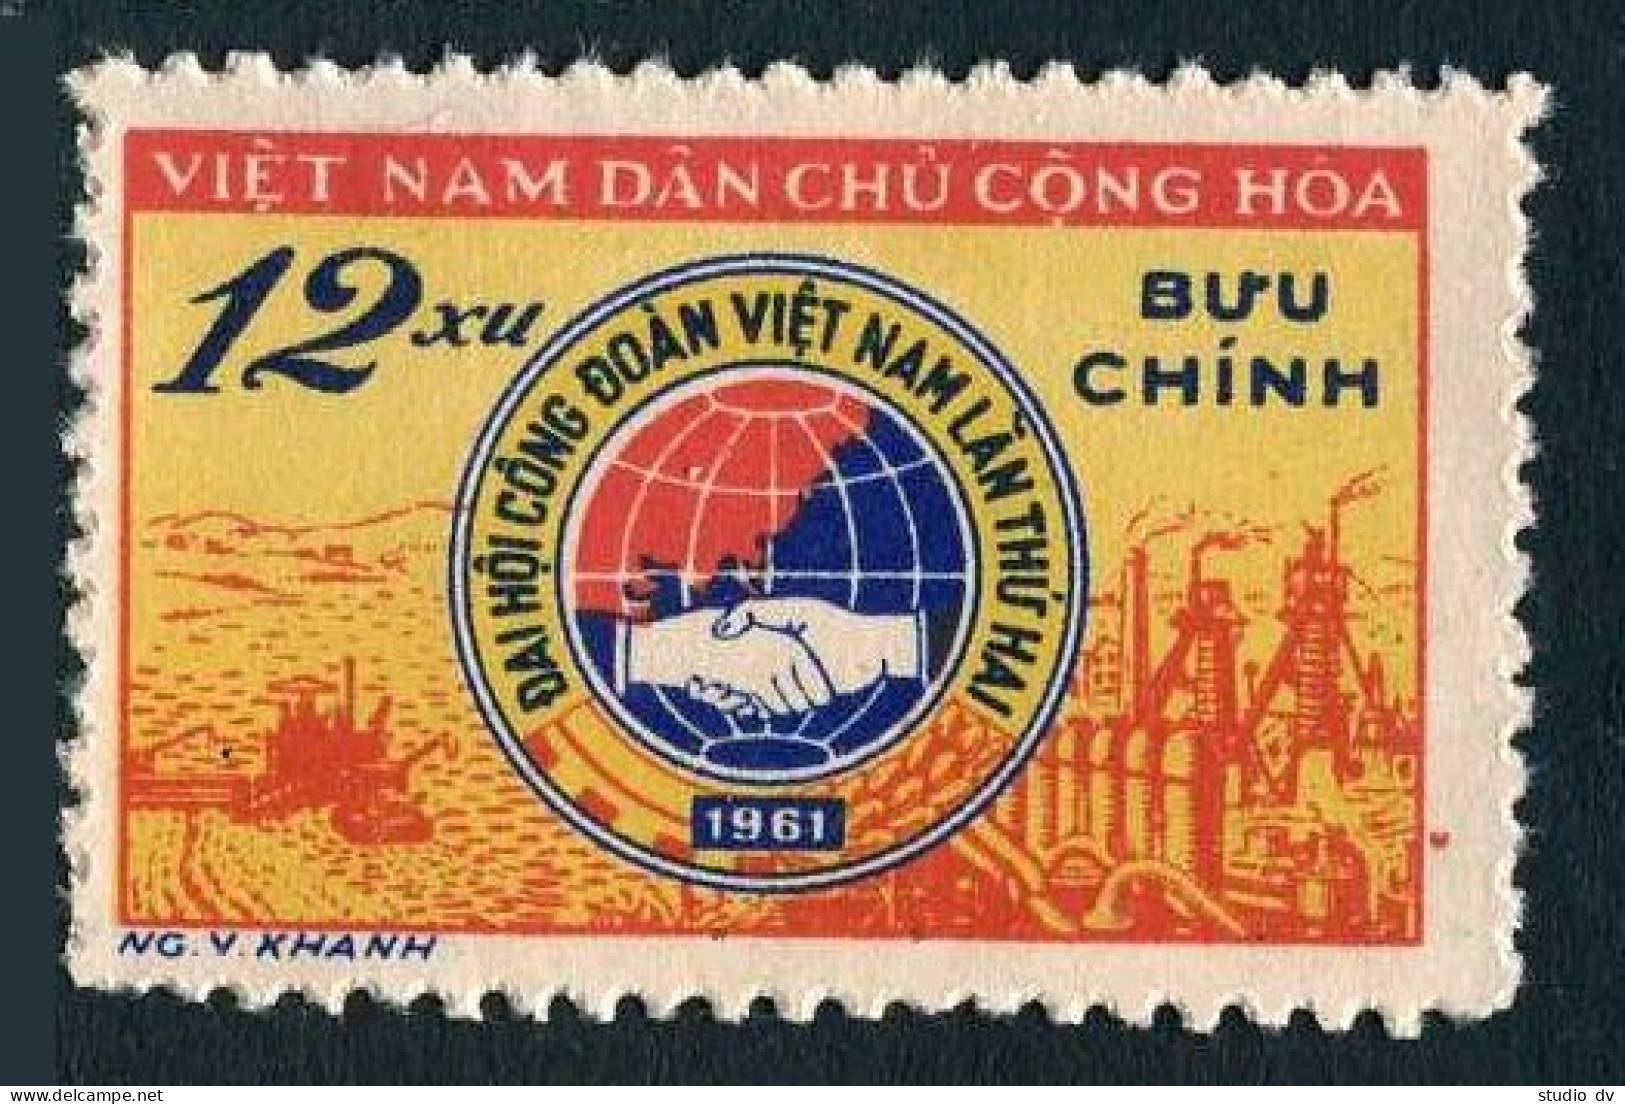 Viet Nam 145,MNH.Michel 151. Trade Unions,2nd National Congress.1961. - Vietnam